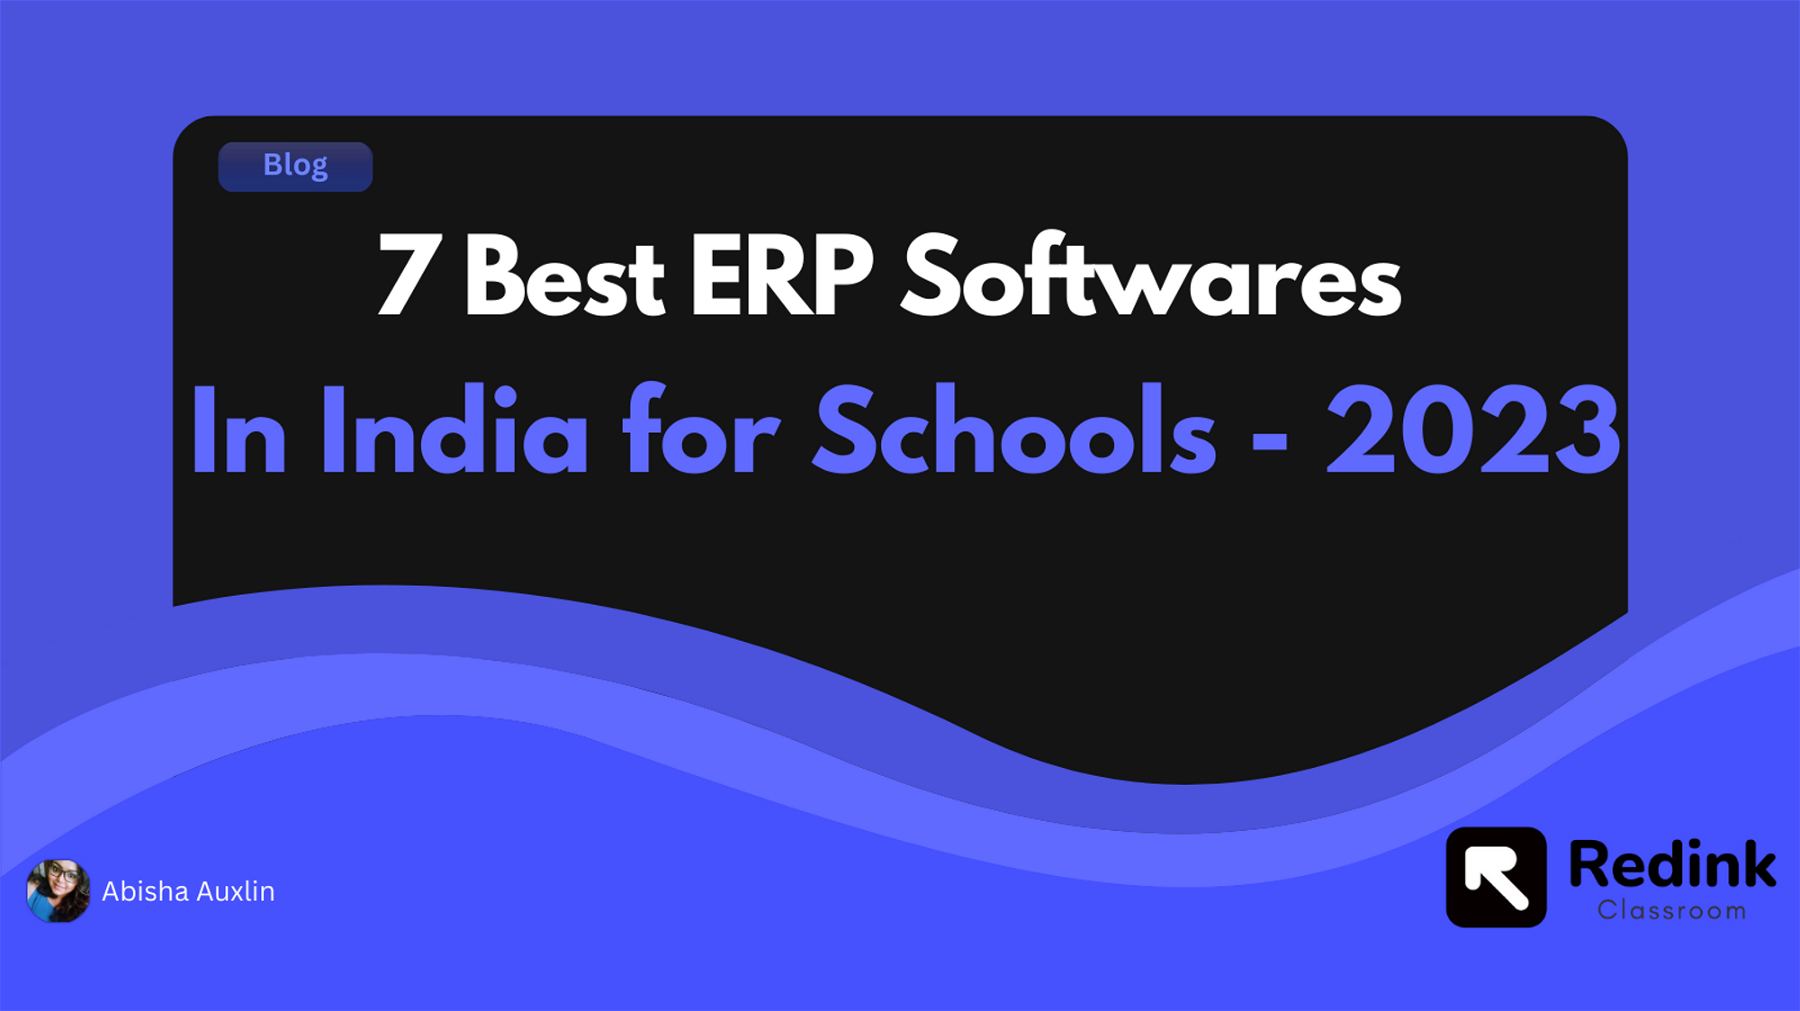 7 Best ERP Softwares In India for Schools - 2023